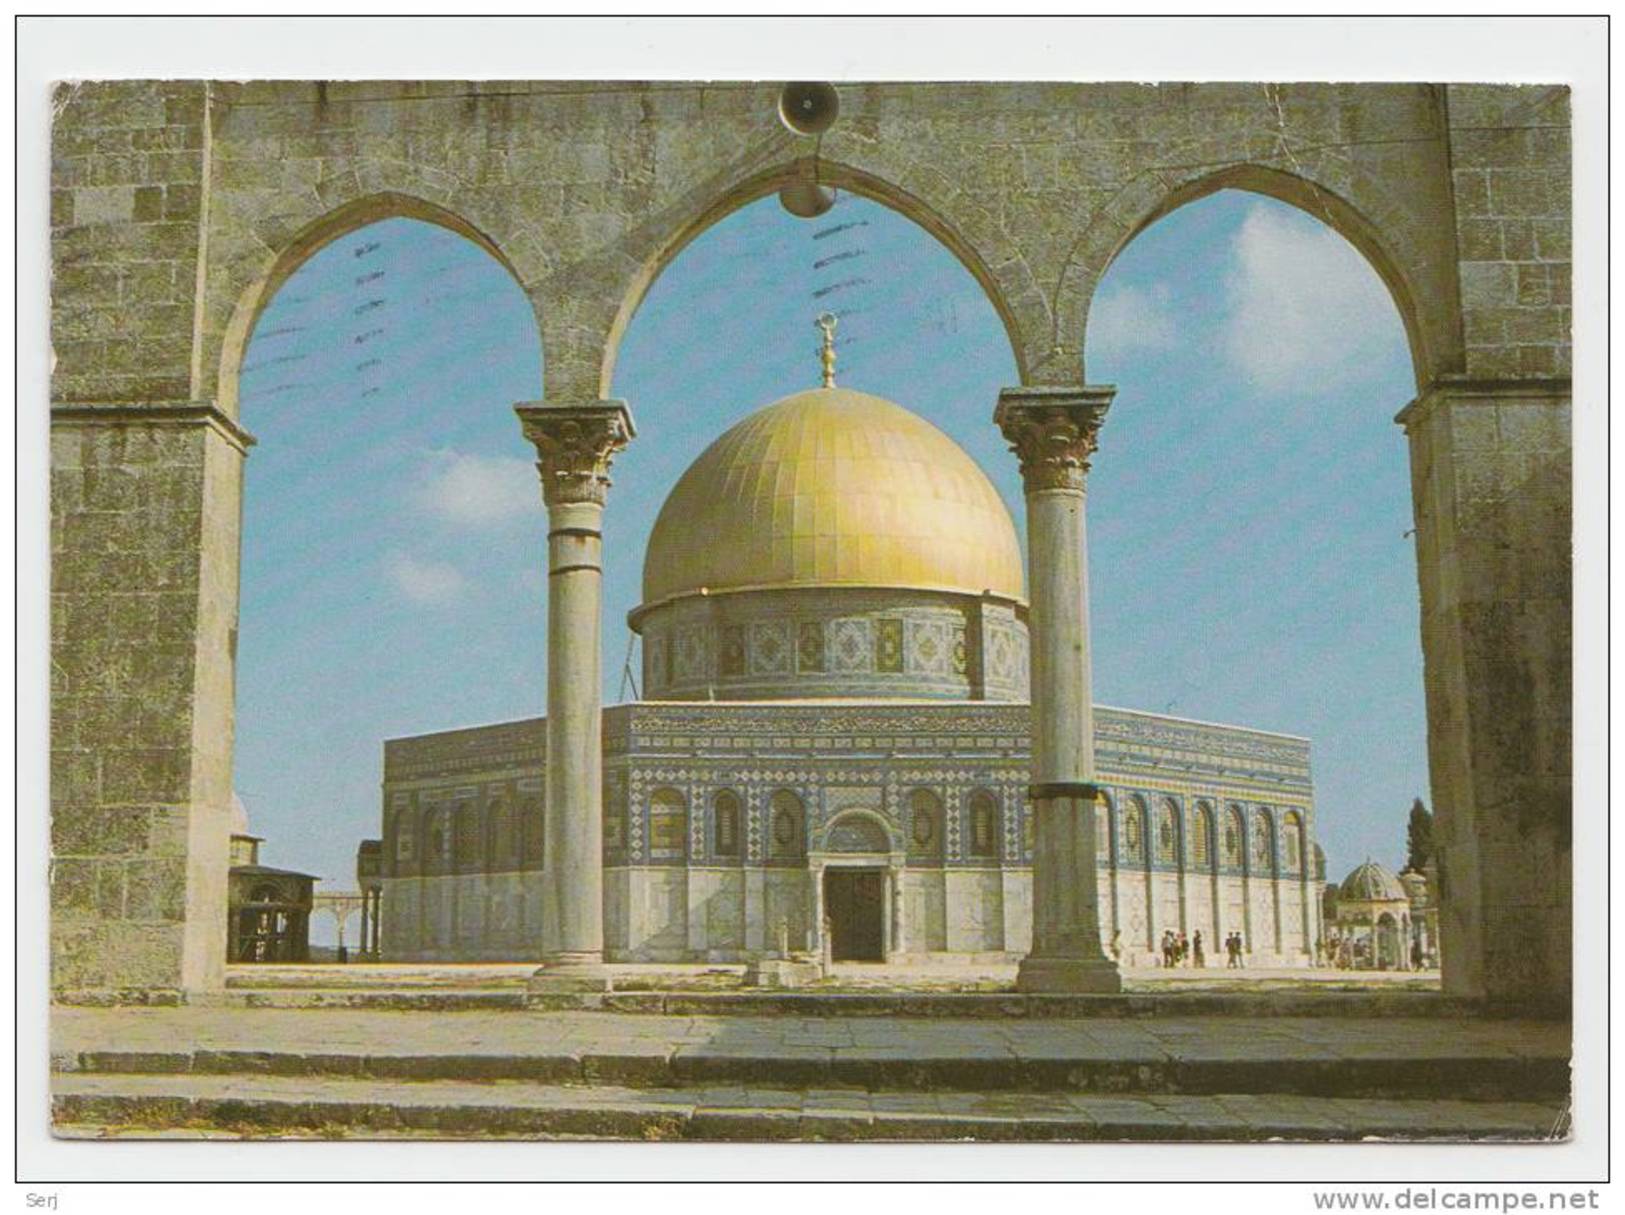 JERUSALEM  Old City Israel 1973 PC - Israel